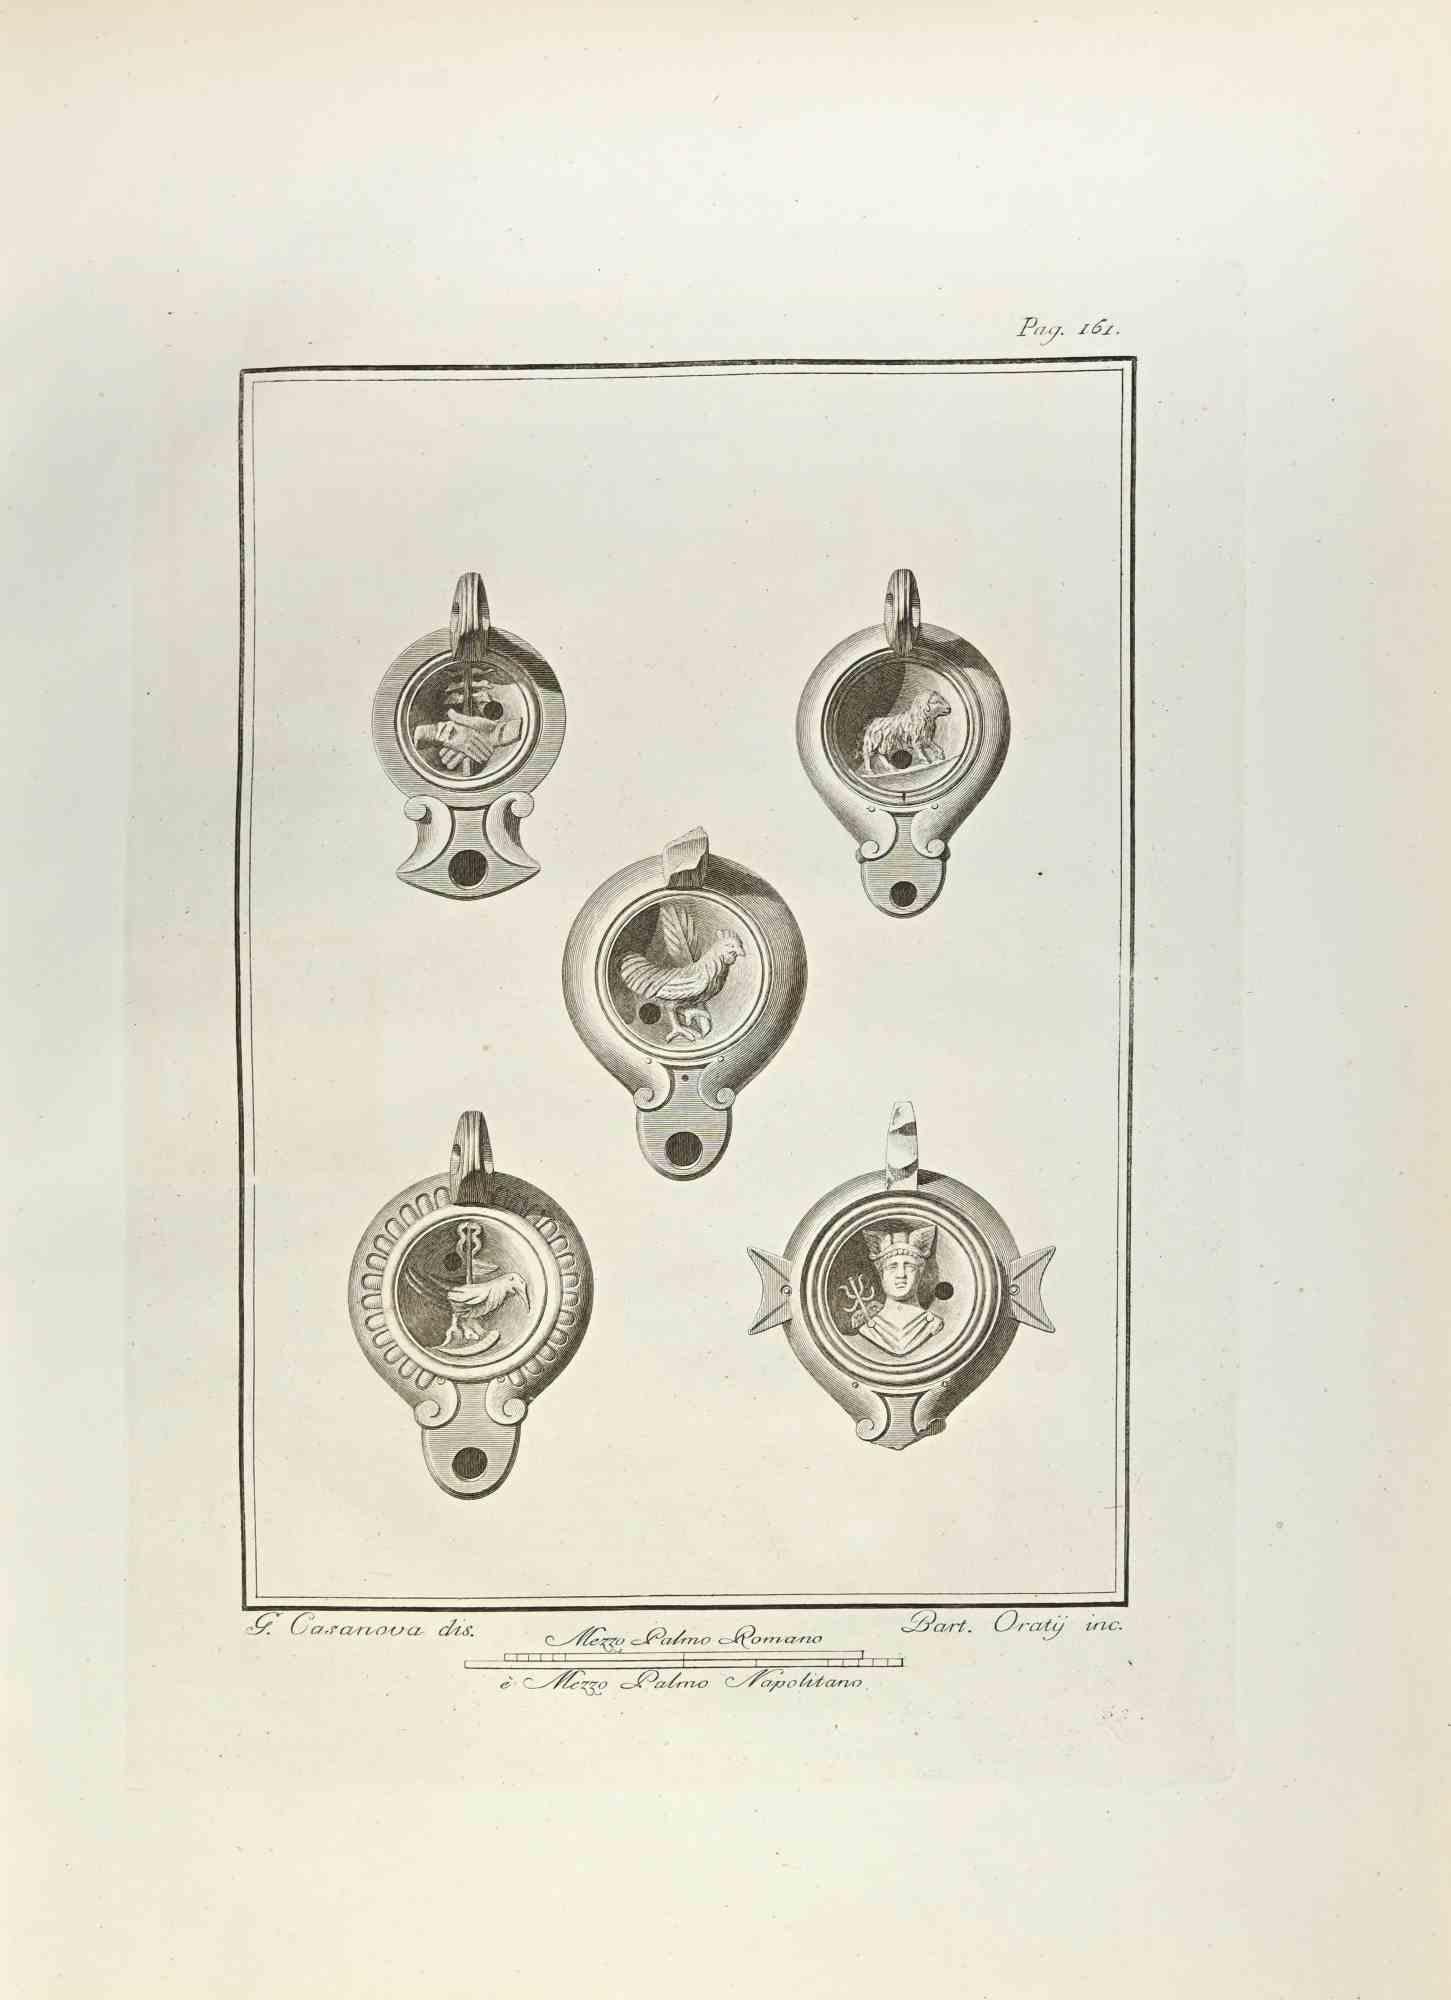 Öllampe mit Hermesgott und Vögeln aus den "Altertümern von Herculaneum" ist eine Radierung auf Papier von Carlo Oraty aus dem 18. Jahrhundert.

Signiert auf der Platte.

Gute Bedingungen.

Die Radierung gehört zu der Druckserie "Antiquities of